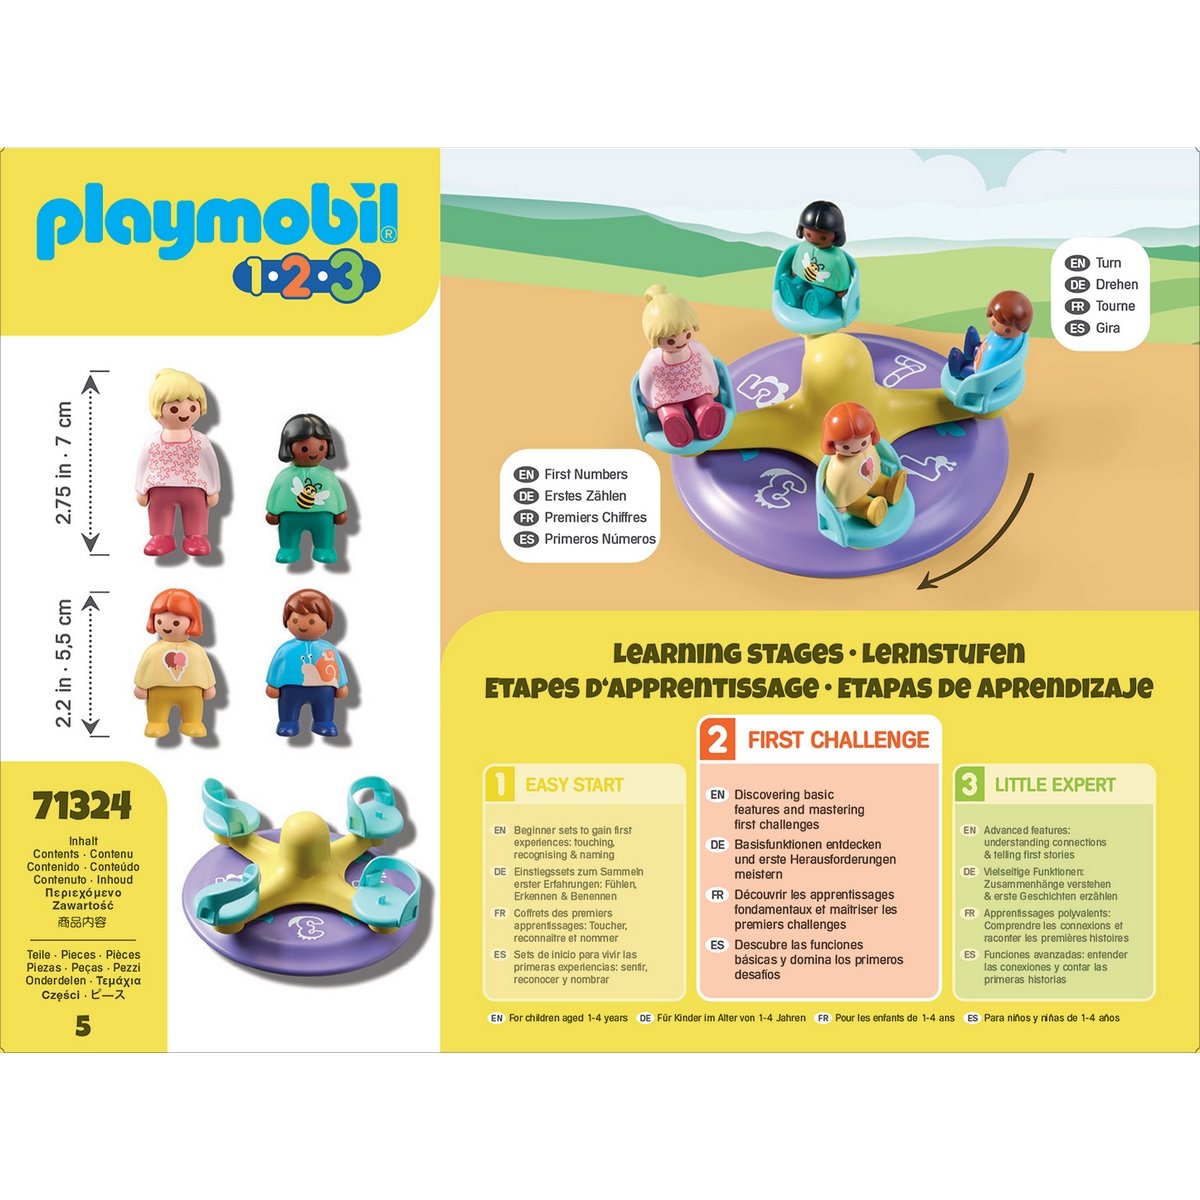 Enfant et tourniquet Playmobil 1.2.3 - 71324 - La Grande Récré